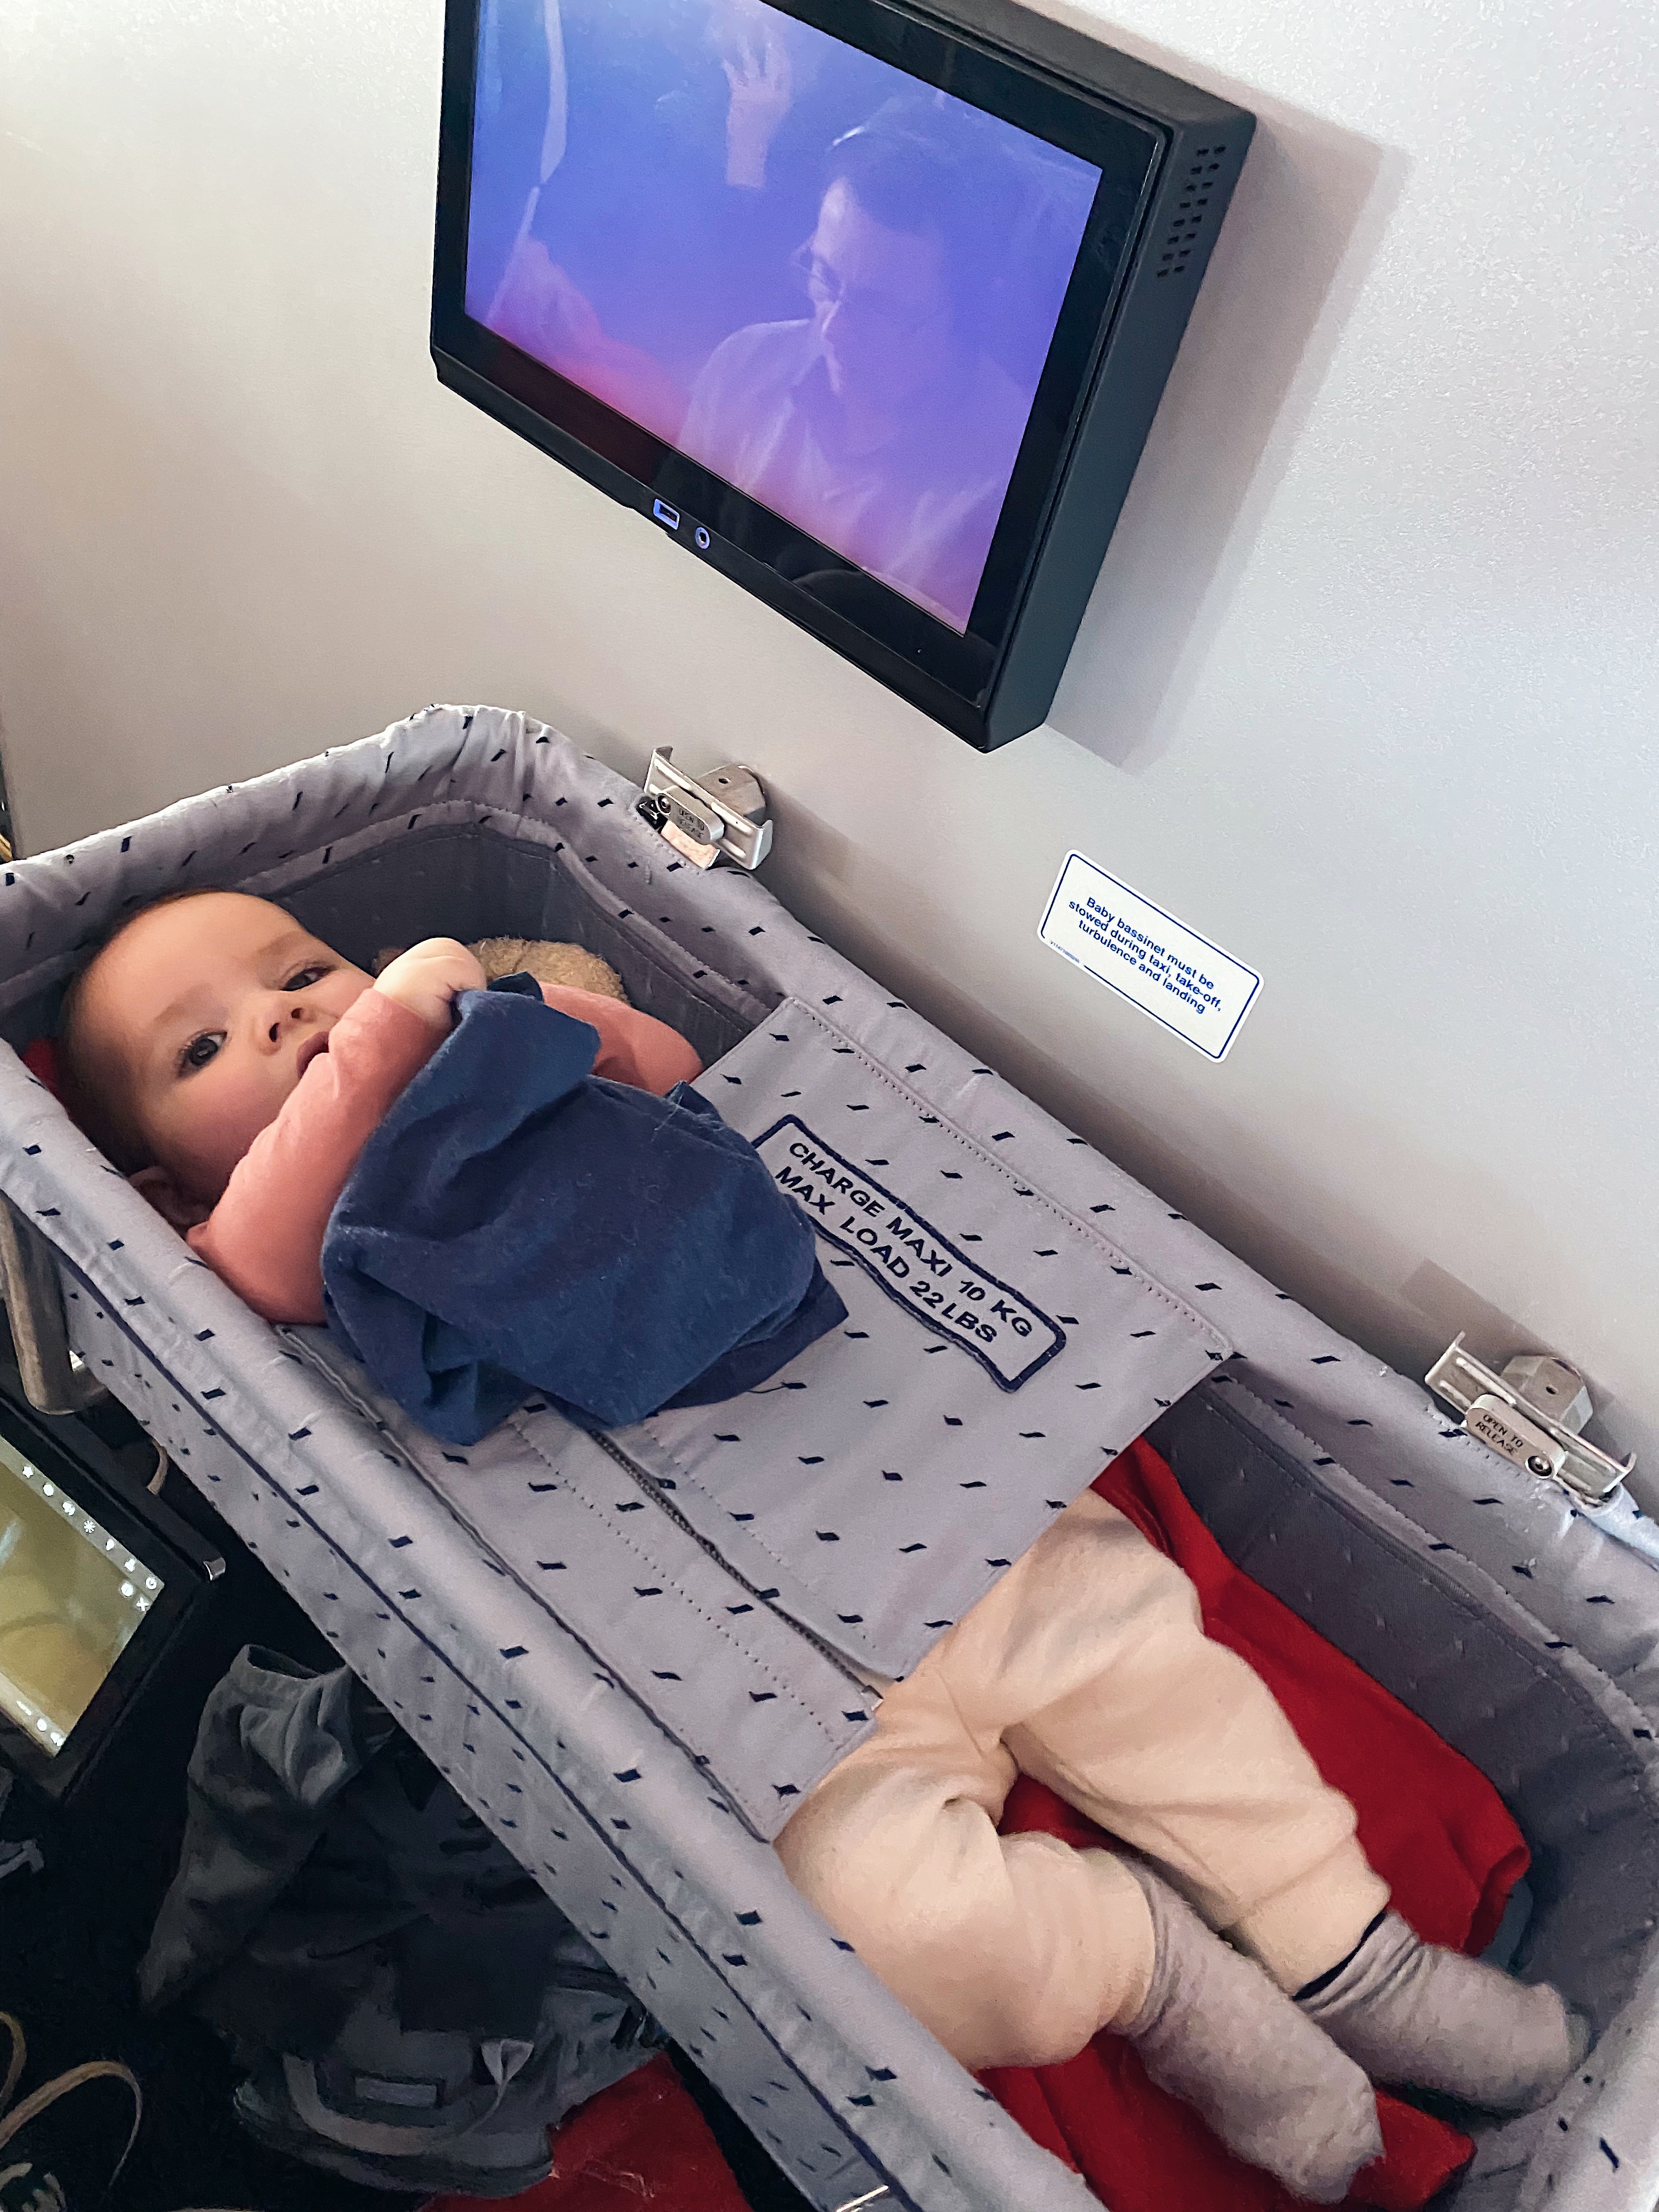 En avion avec bébé